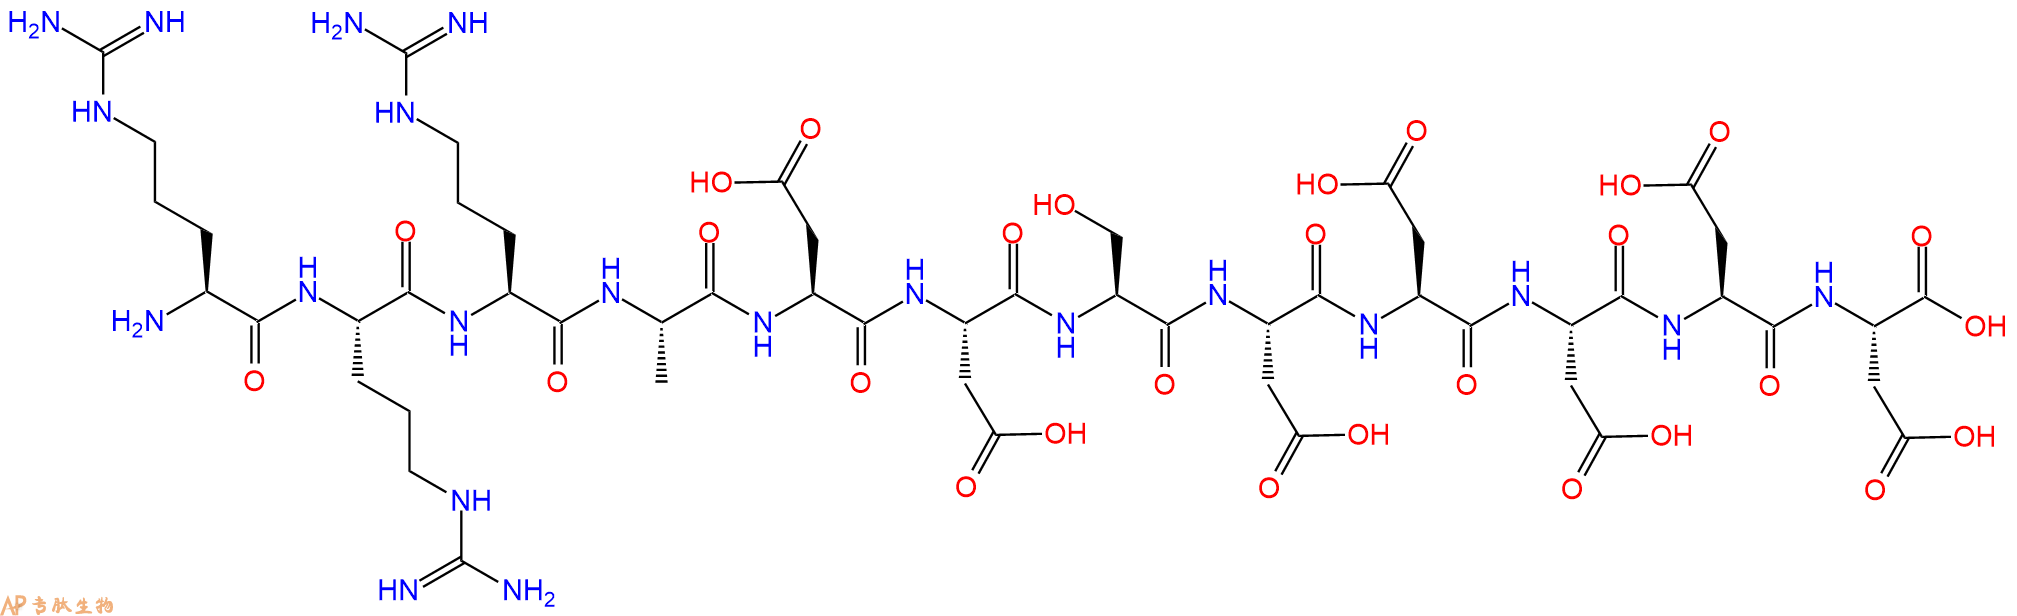 专肽生物产品RRRADDSDDDDD154444-98-1